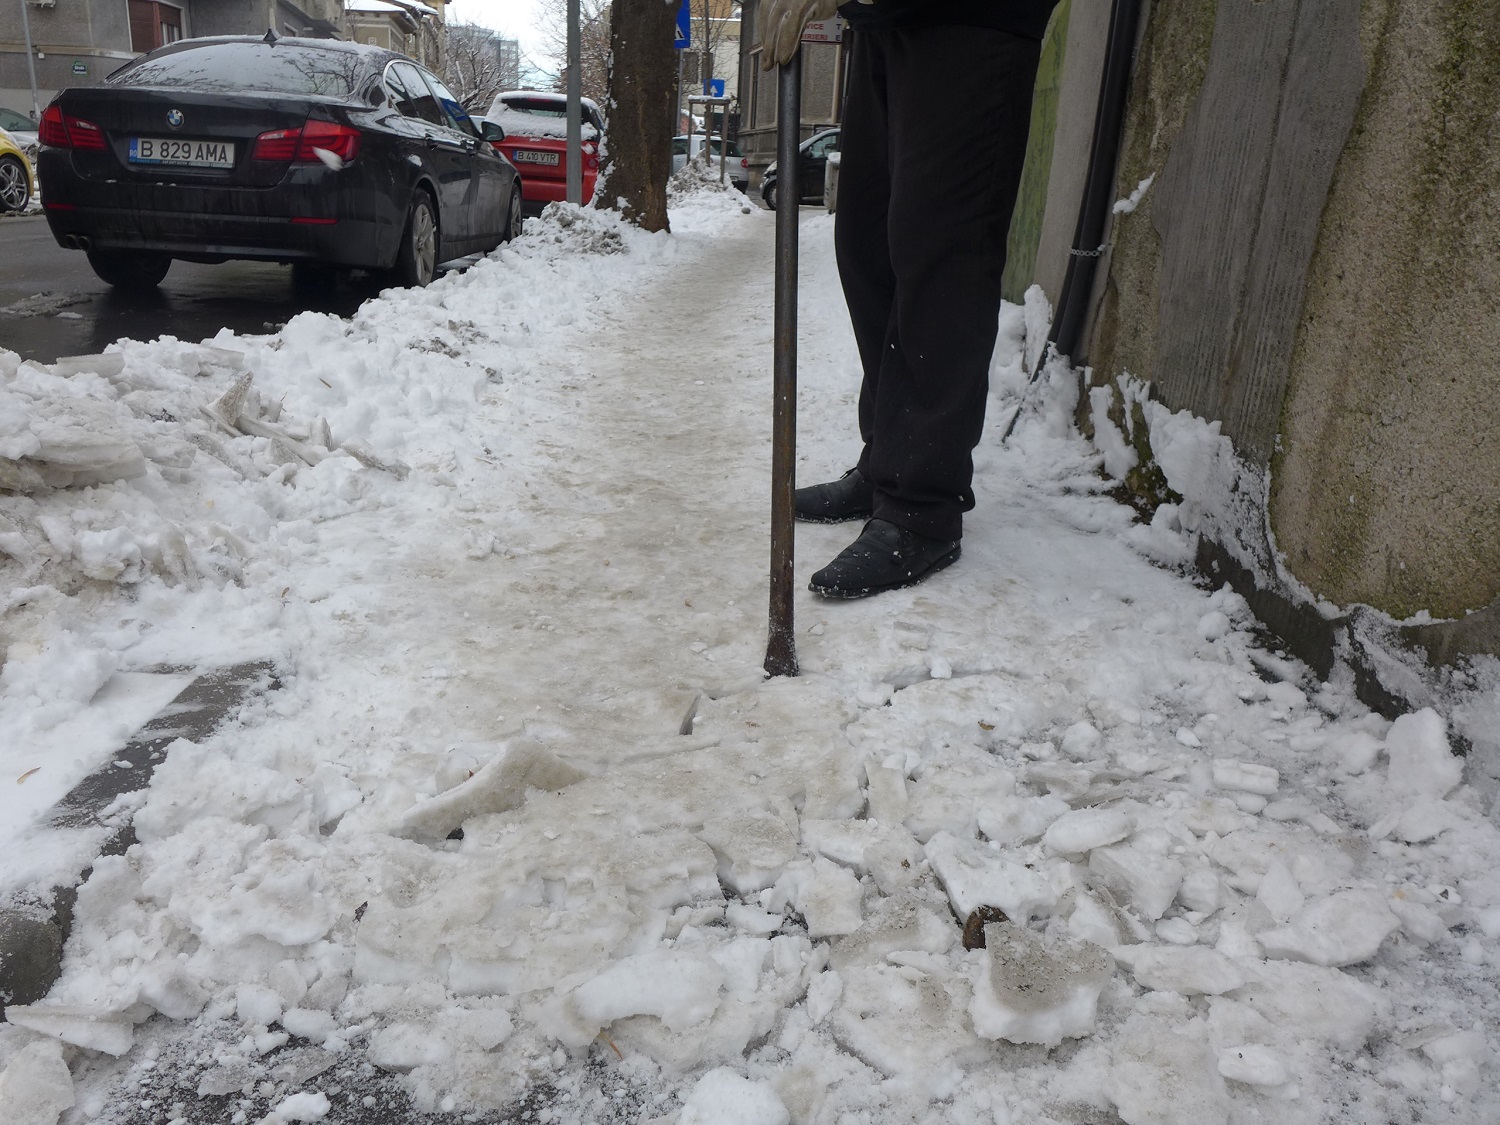 Après plusieurs jours, la neige piétinée mille fois par les passants devient très dure et forme une sorte de plaque. Il faut alors utiliser une barre de fer pour la décoller du trottoir. 